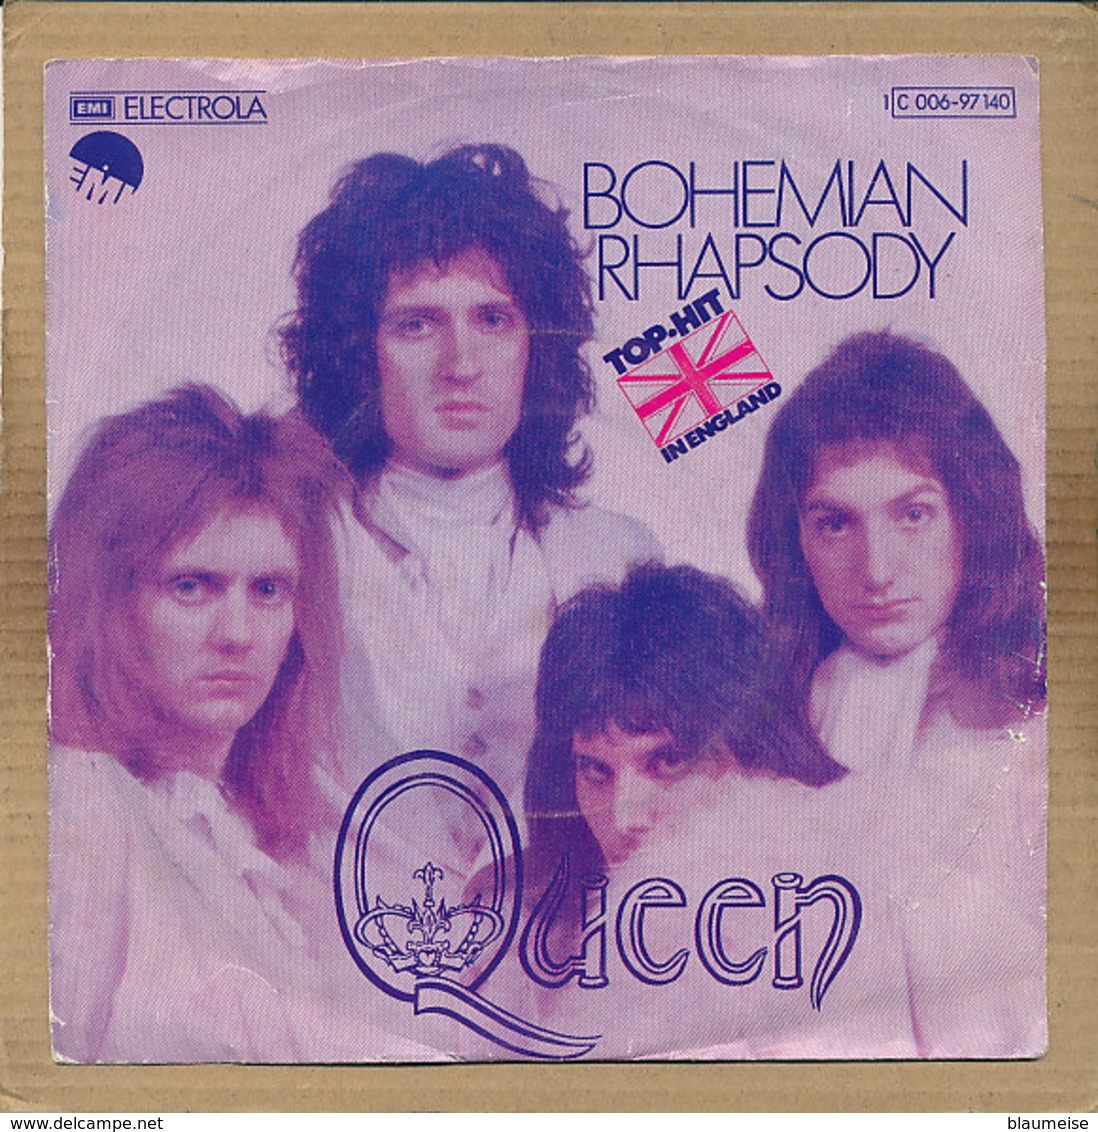 7" Single, Queen - Bohemian Rhapsody - Disco, Pop